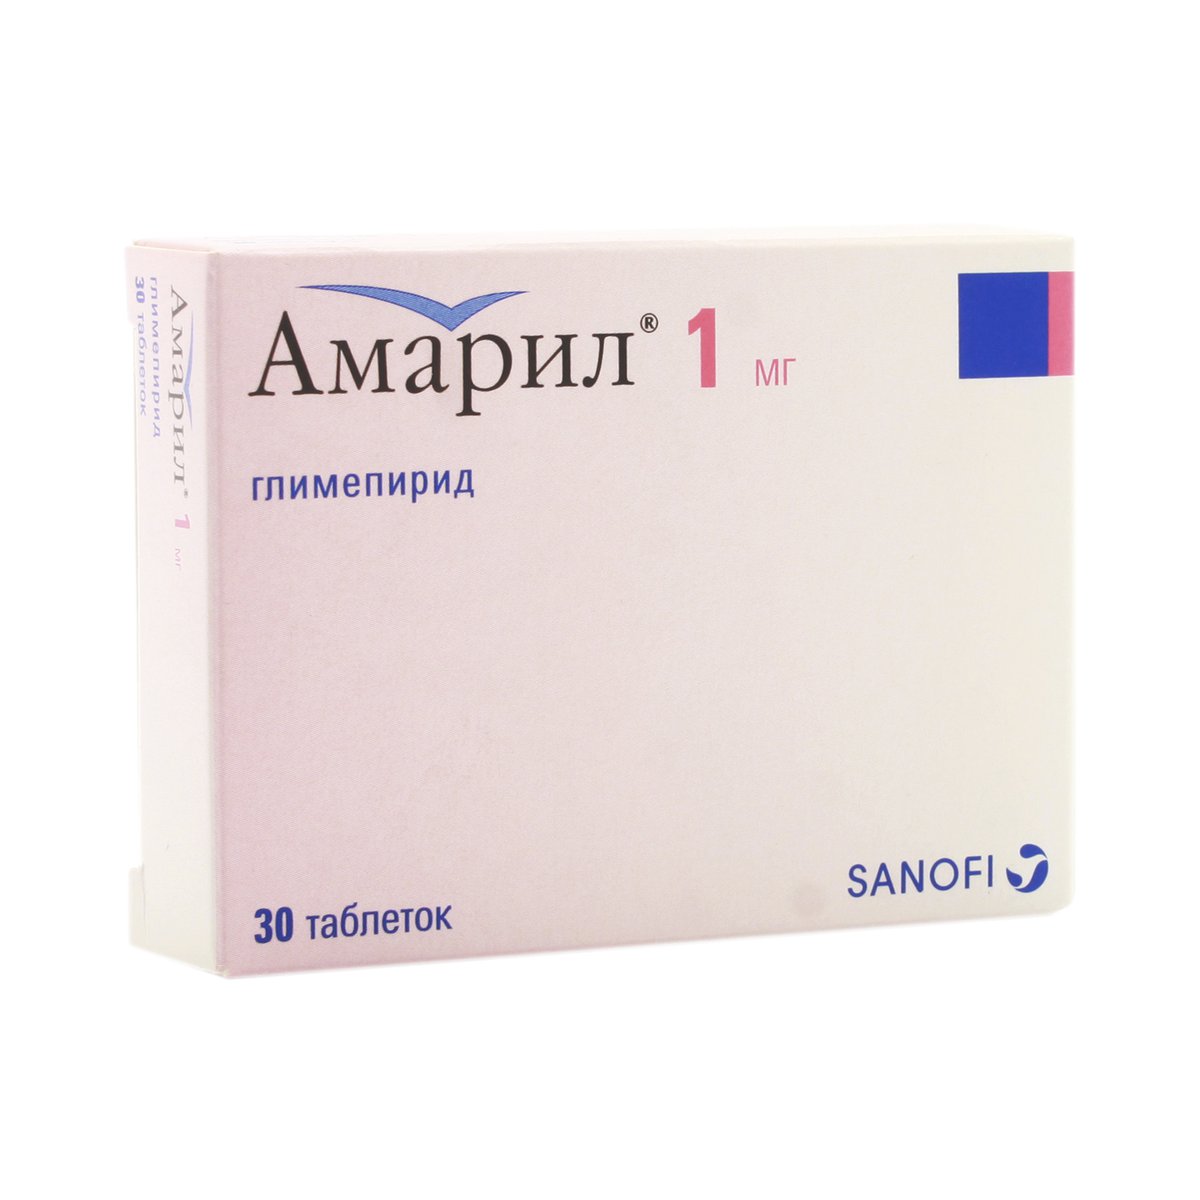 Амарил (таблетки, 30 шт, 1 мг) - цена,  онлайн , описание .